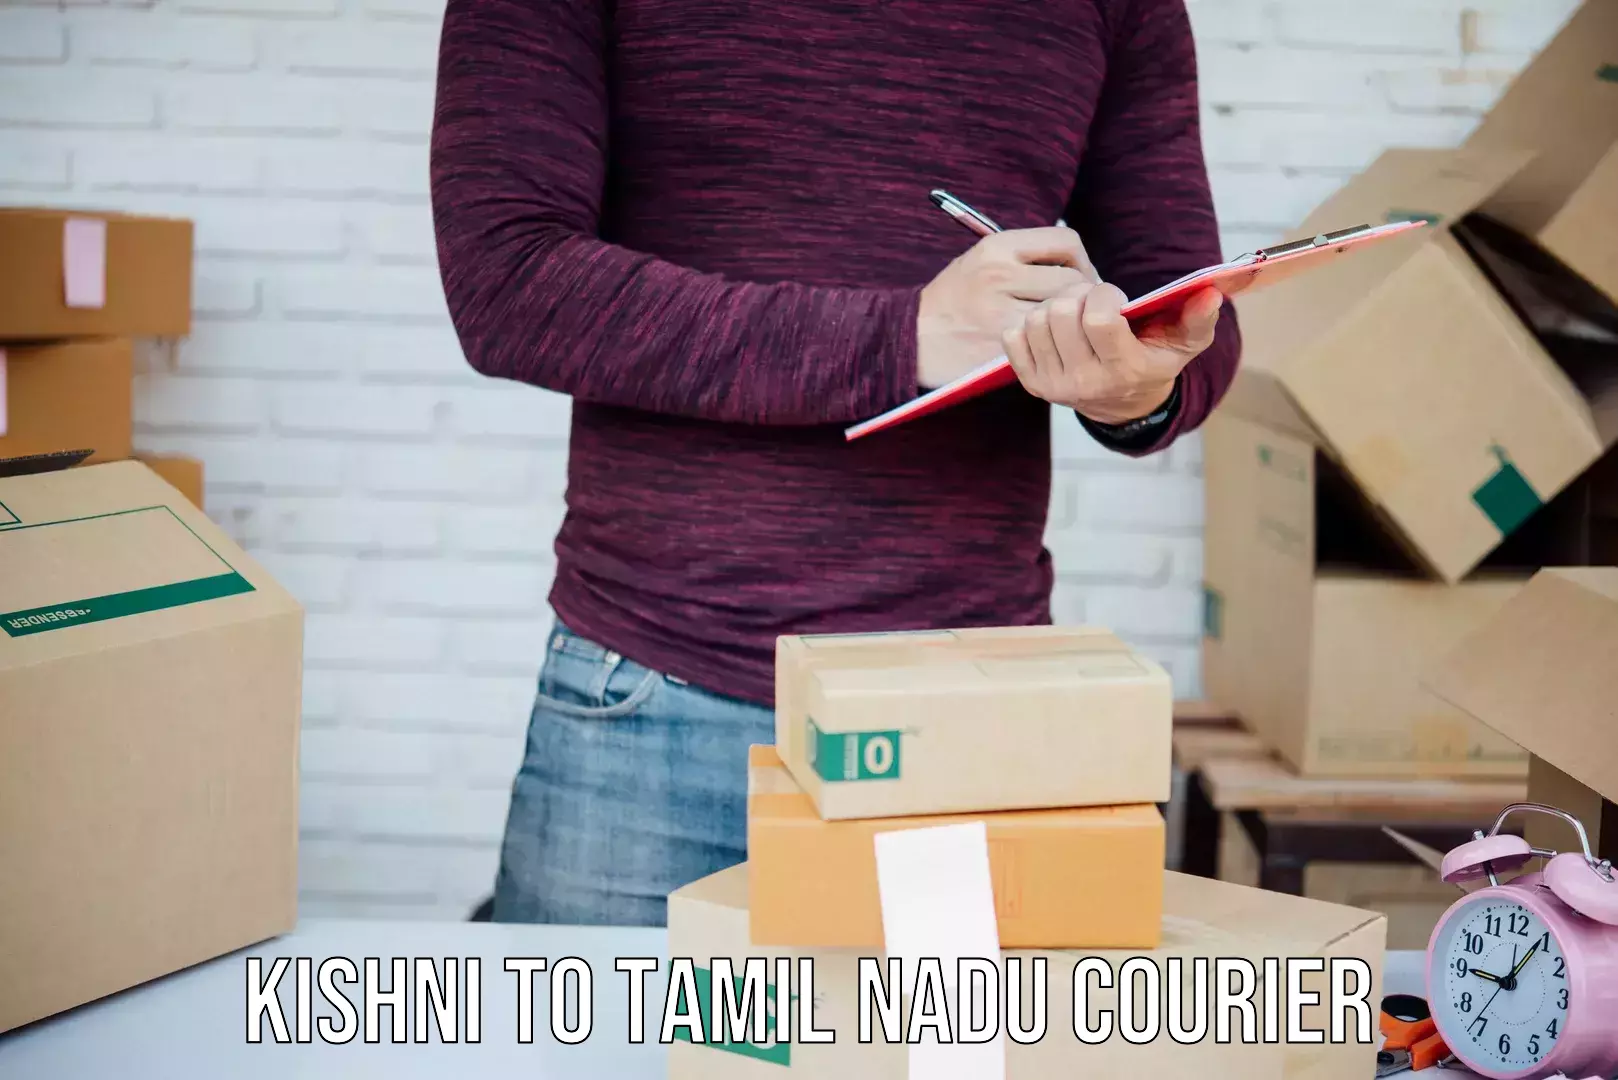 Courier insurance Kishni to Tamil Nadu